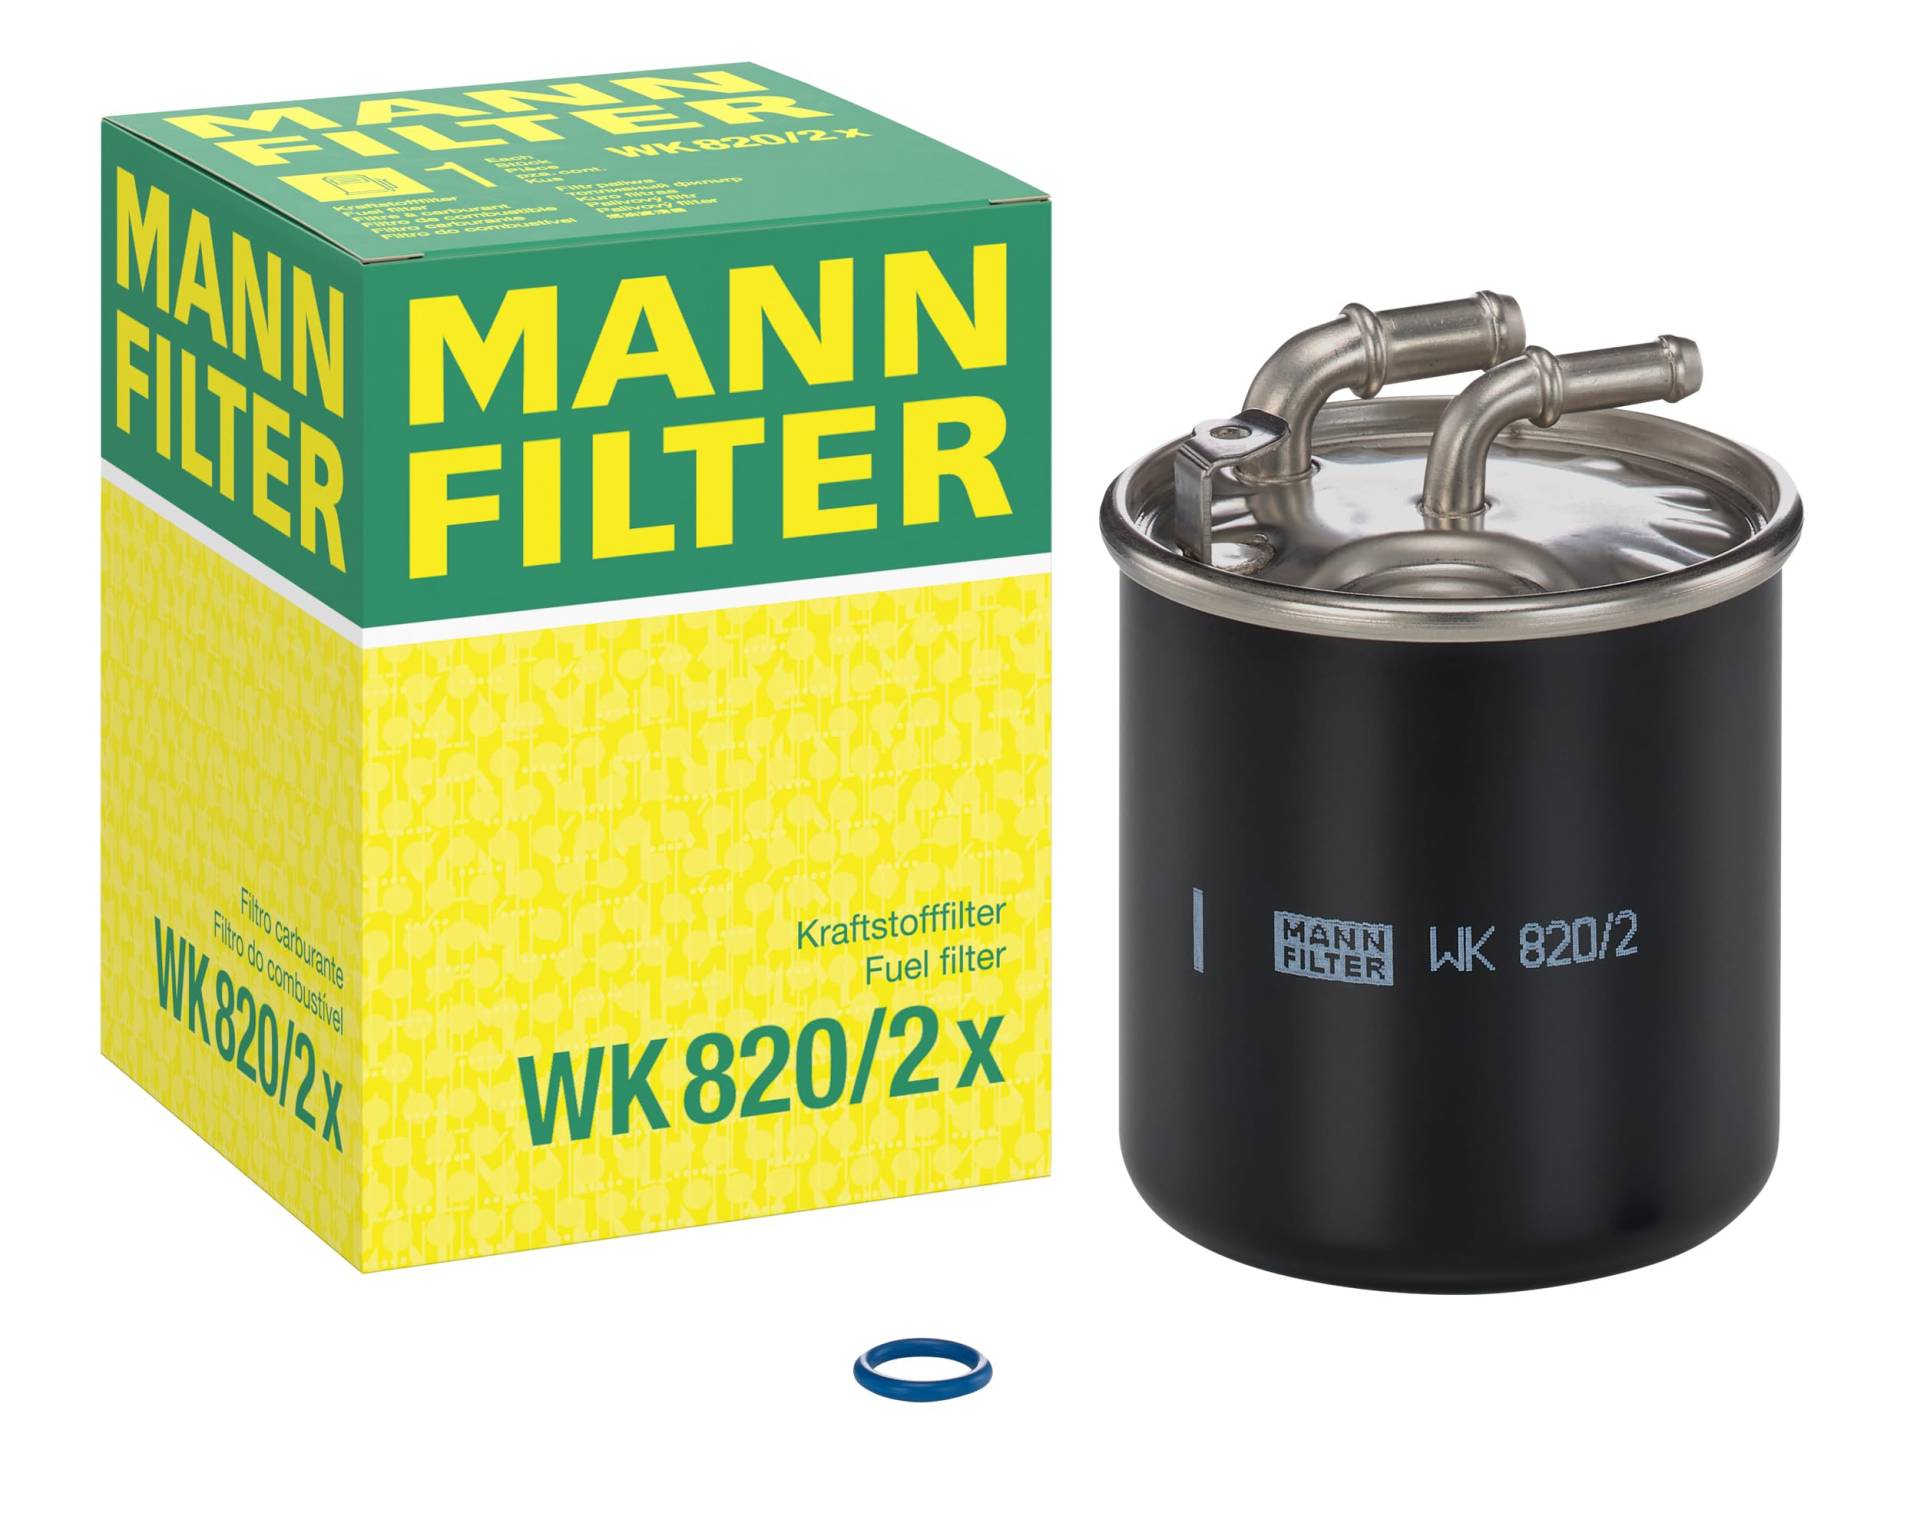 MANN-FILTER WK 820/2 X Kraftstofffilter – Kraftstofffilter Satz mit Dichtung / Dichtungssatz – Für PKW und LKW von MANN-FILTER